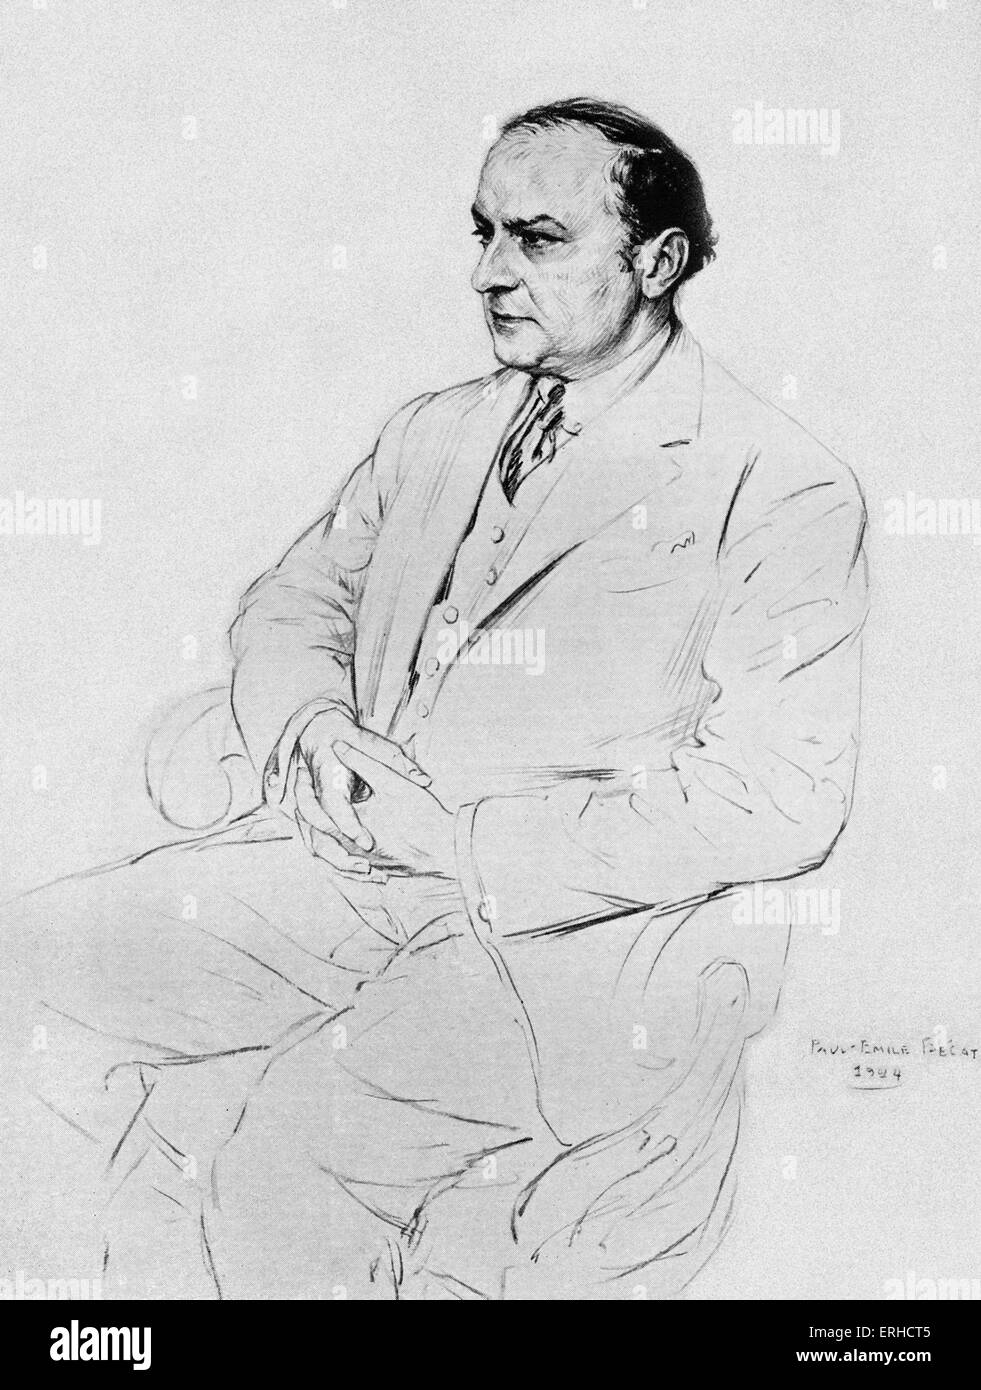 Léon-Paul Fargue, Portrait. Französischer Dichter und Essayist, 4. März 1876 – 24. November 1947. Nach der Abbildung von Paul-Émile Stockfoto